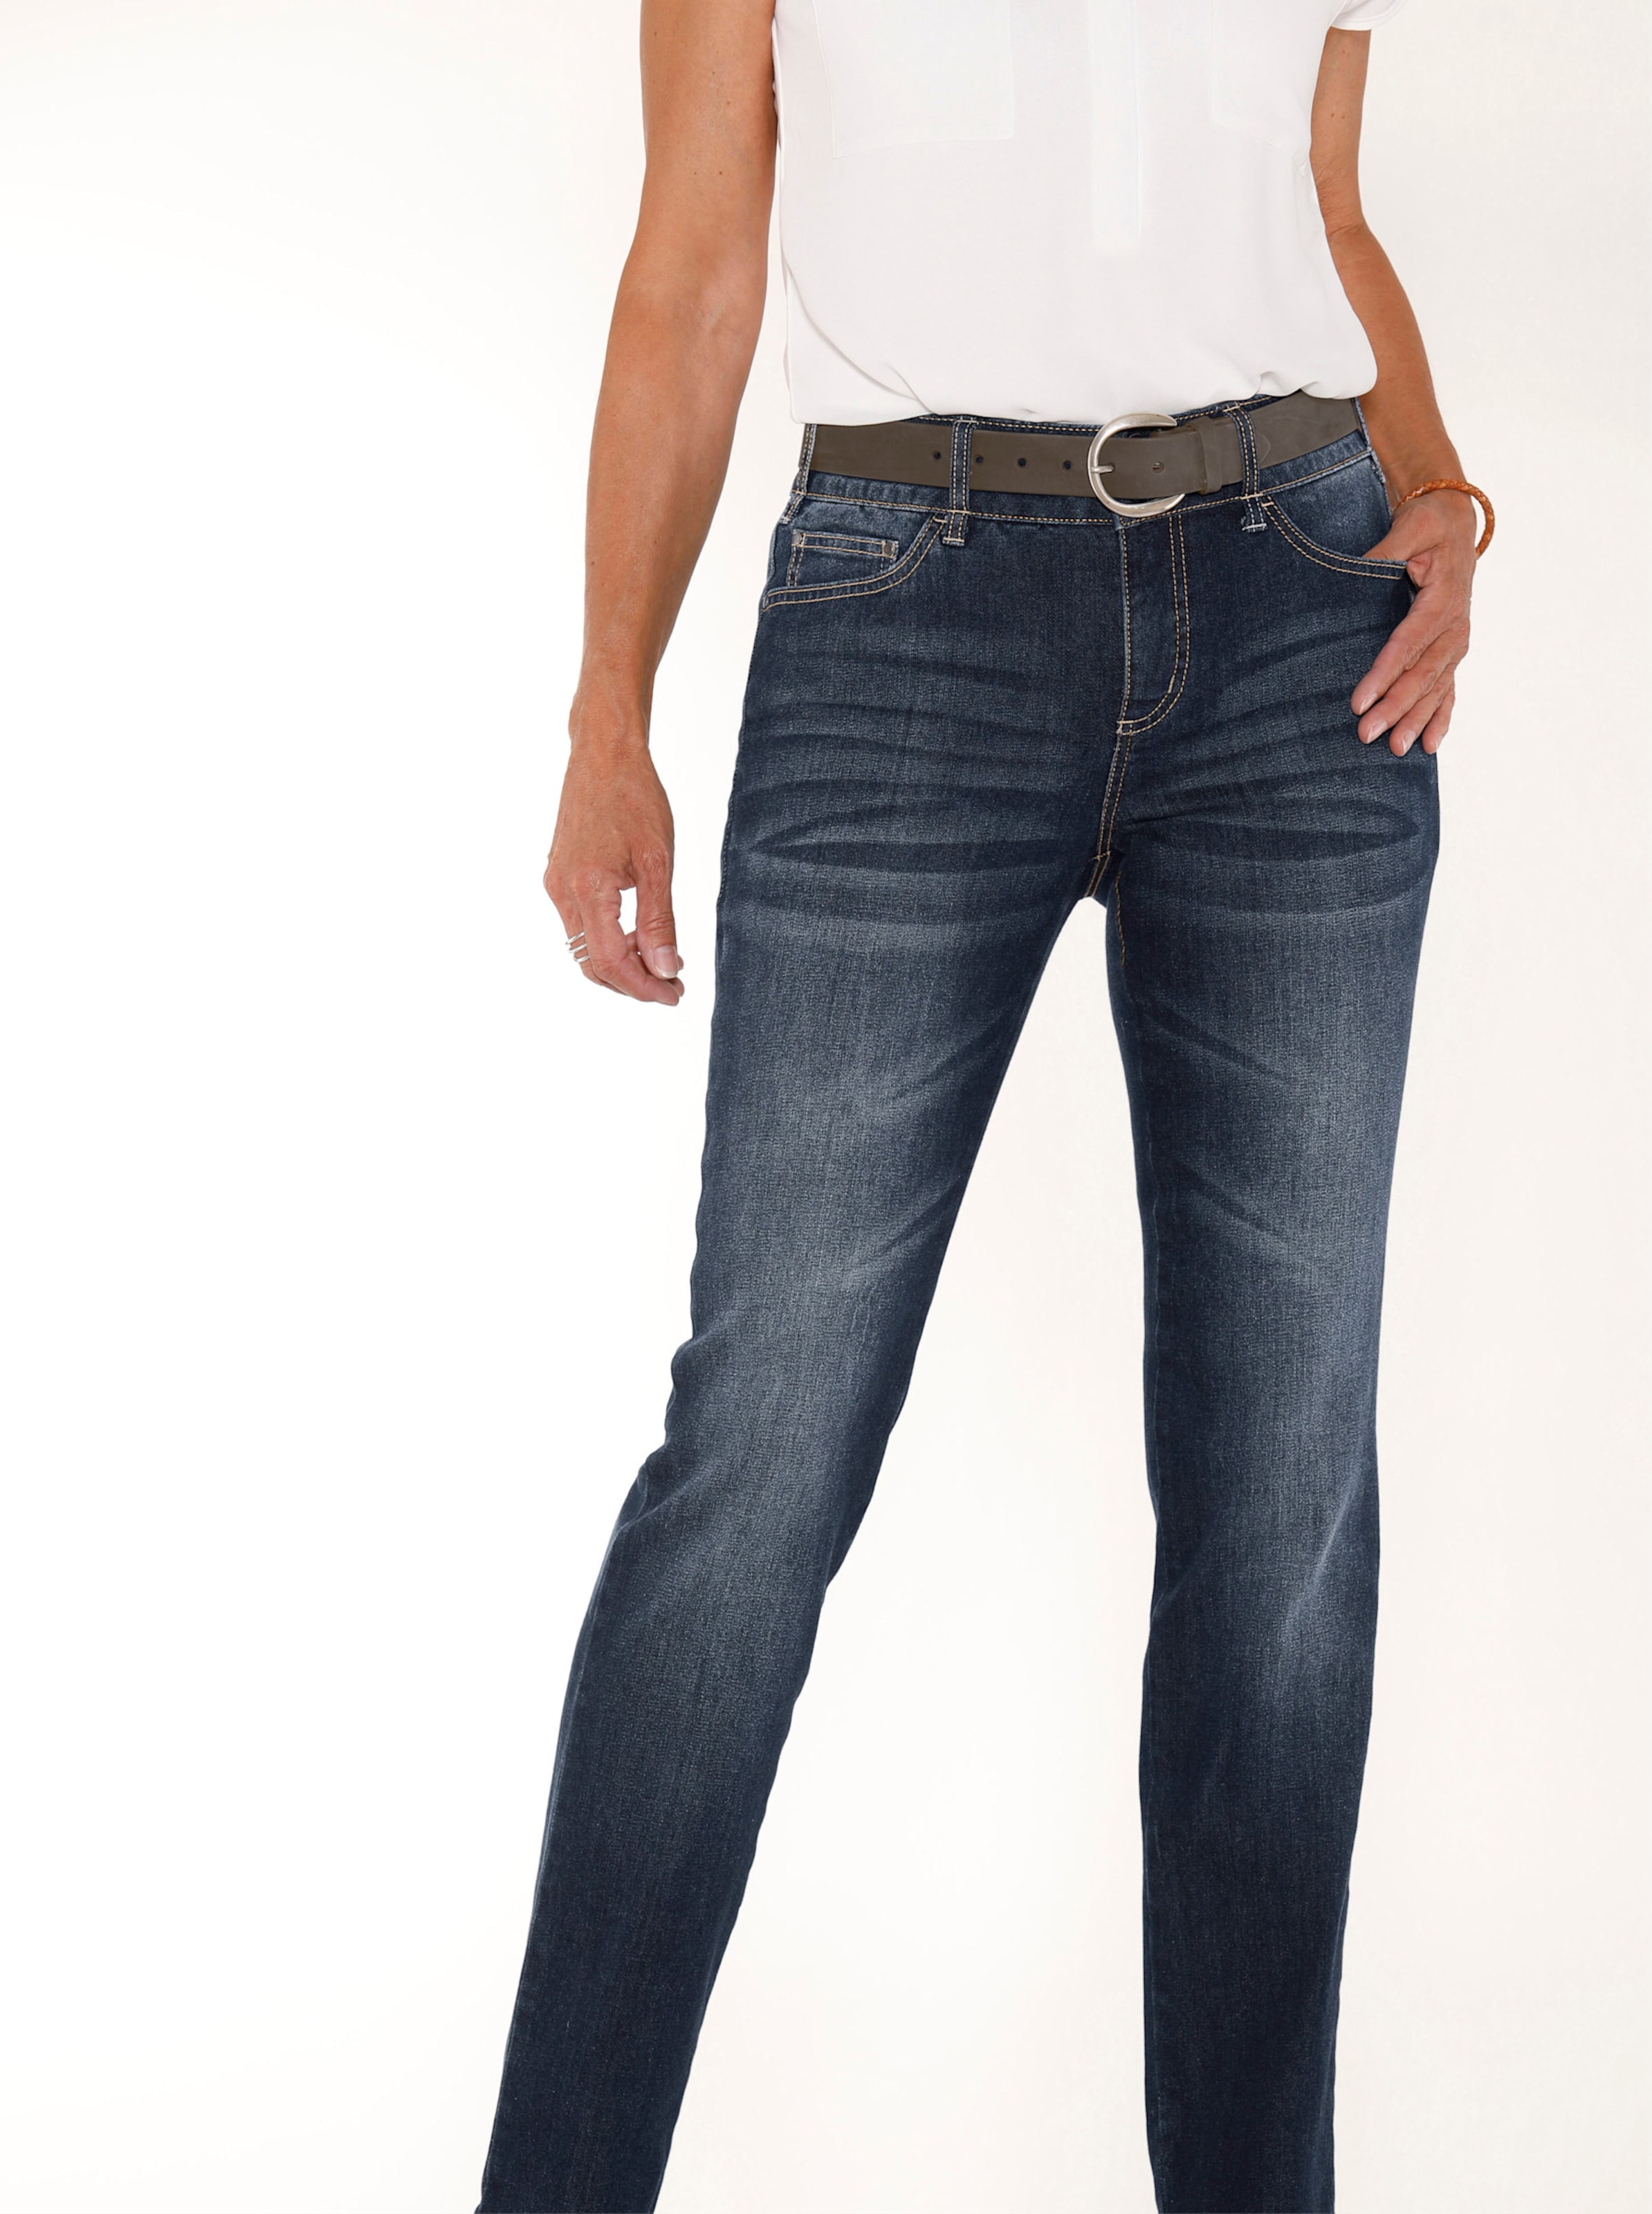 Witt Damen Jeans mit Nieten an den Taschen, dark blue